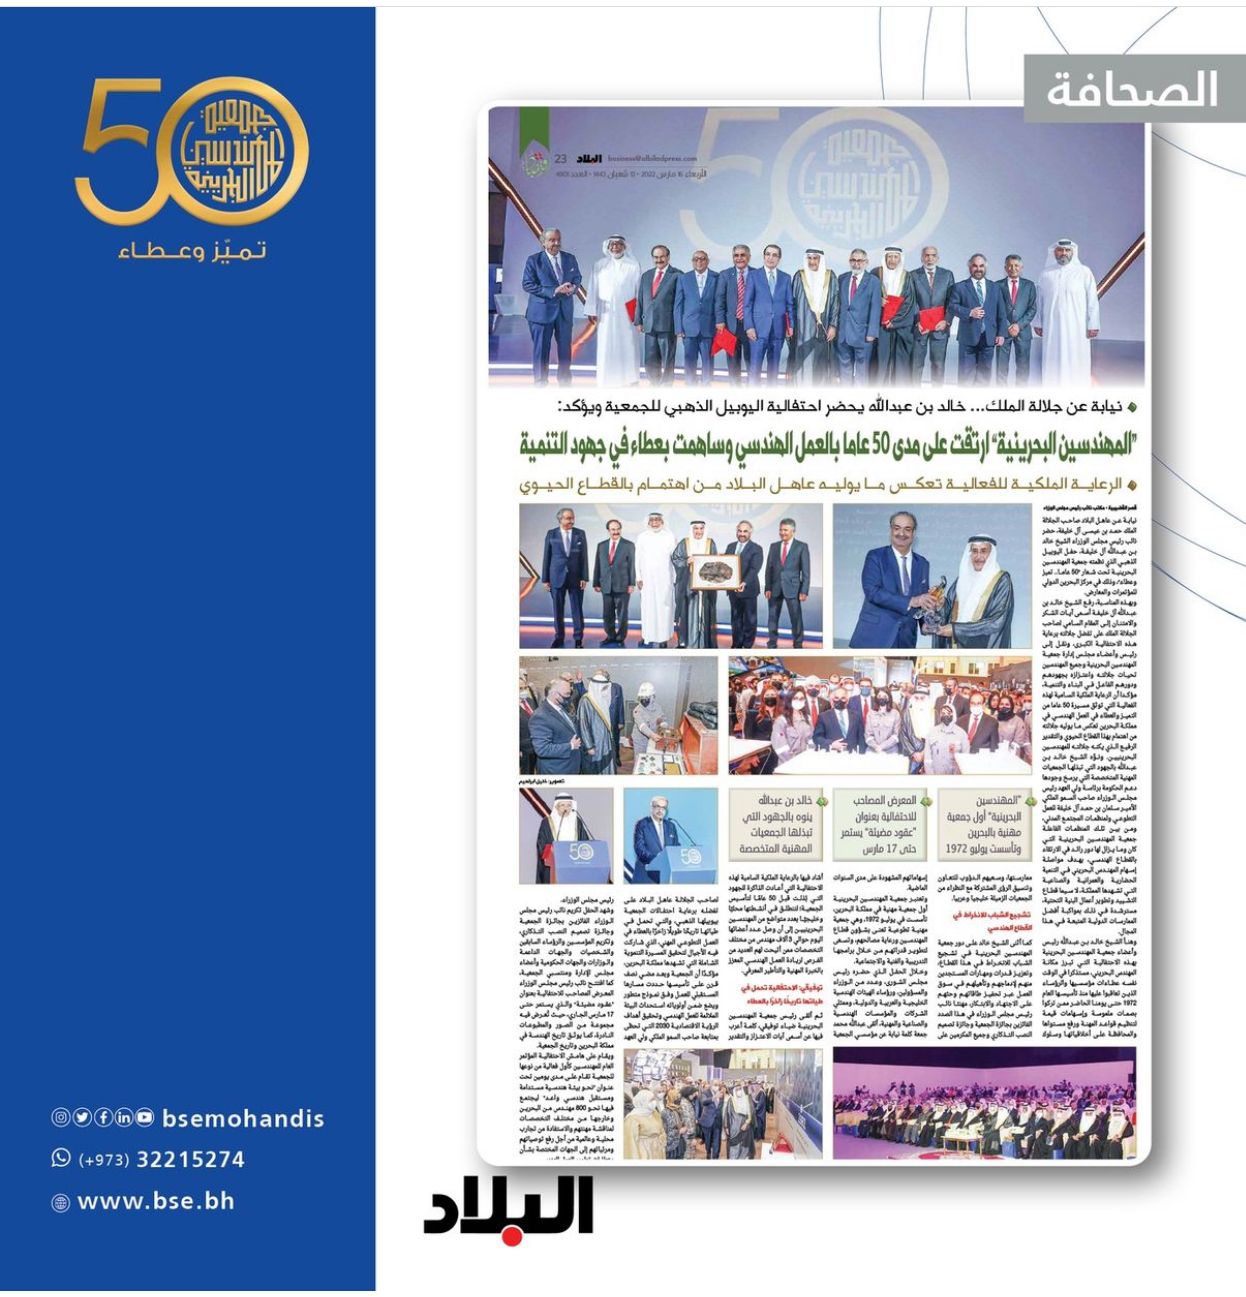 “المهندسين البحرينية” ارتقت على مدى 50 عاما بالعمل الهندسي وساهمت بعطاء في جهود التنمية